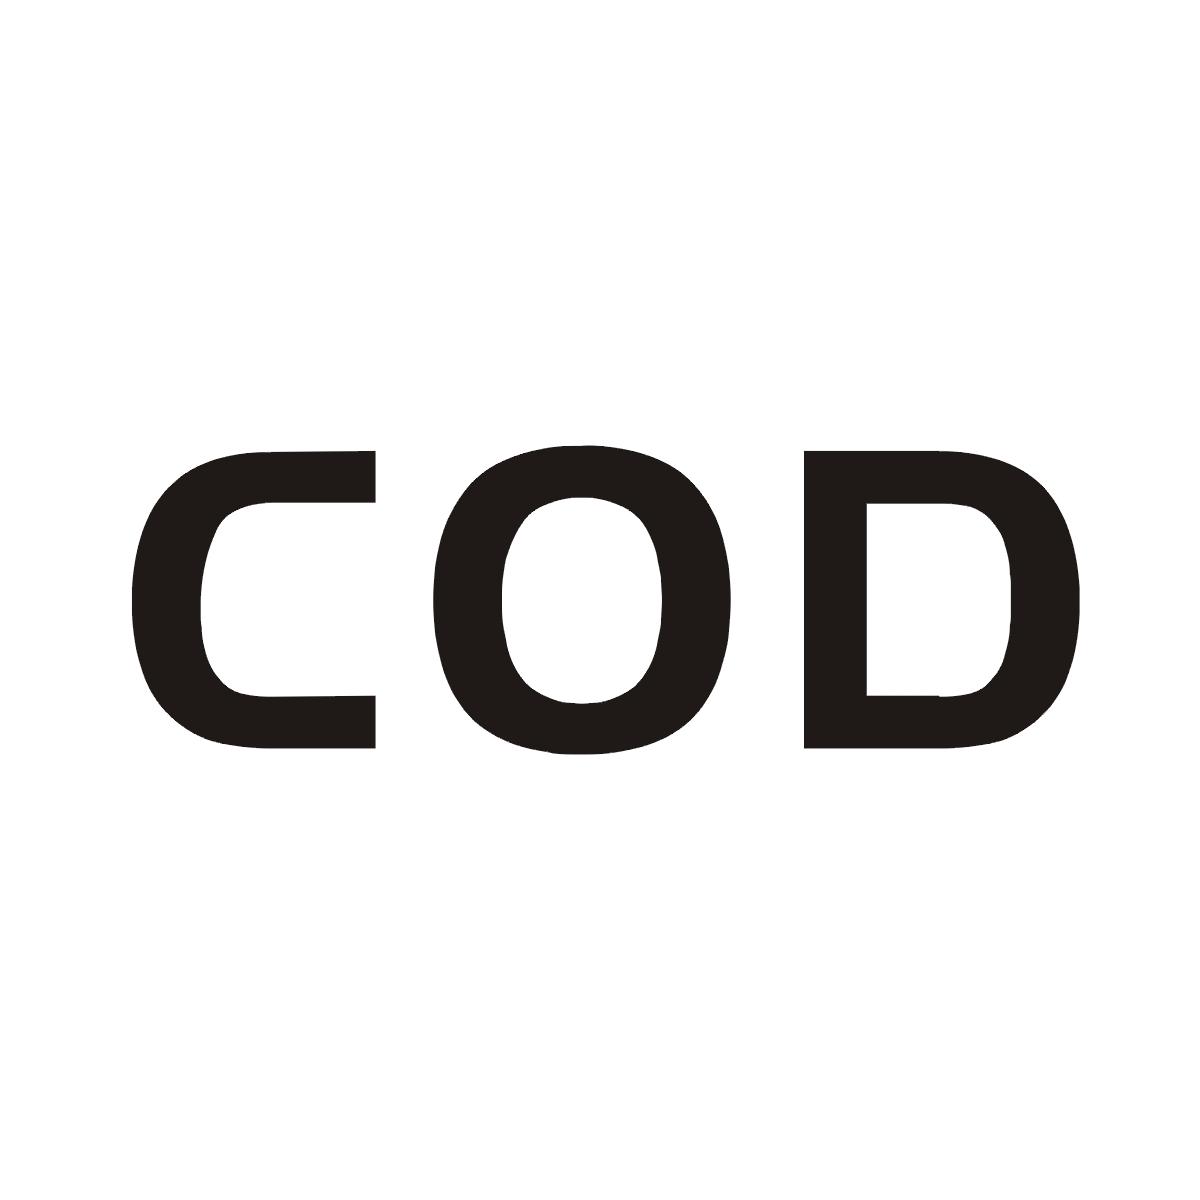 COD商标图片